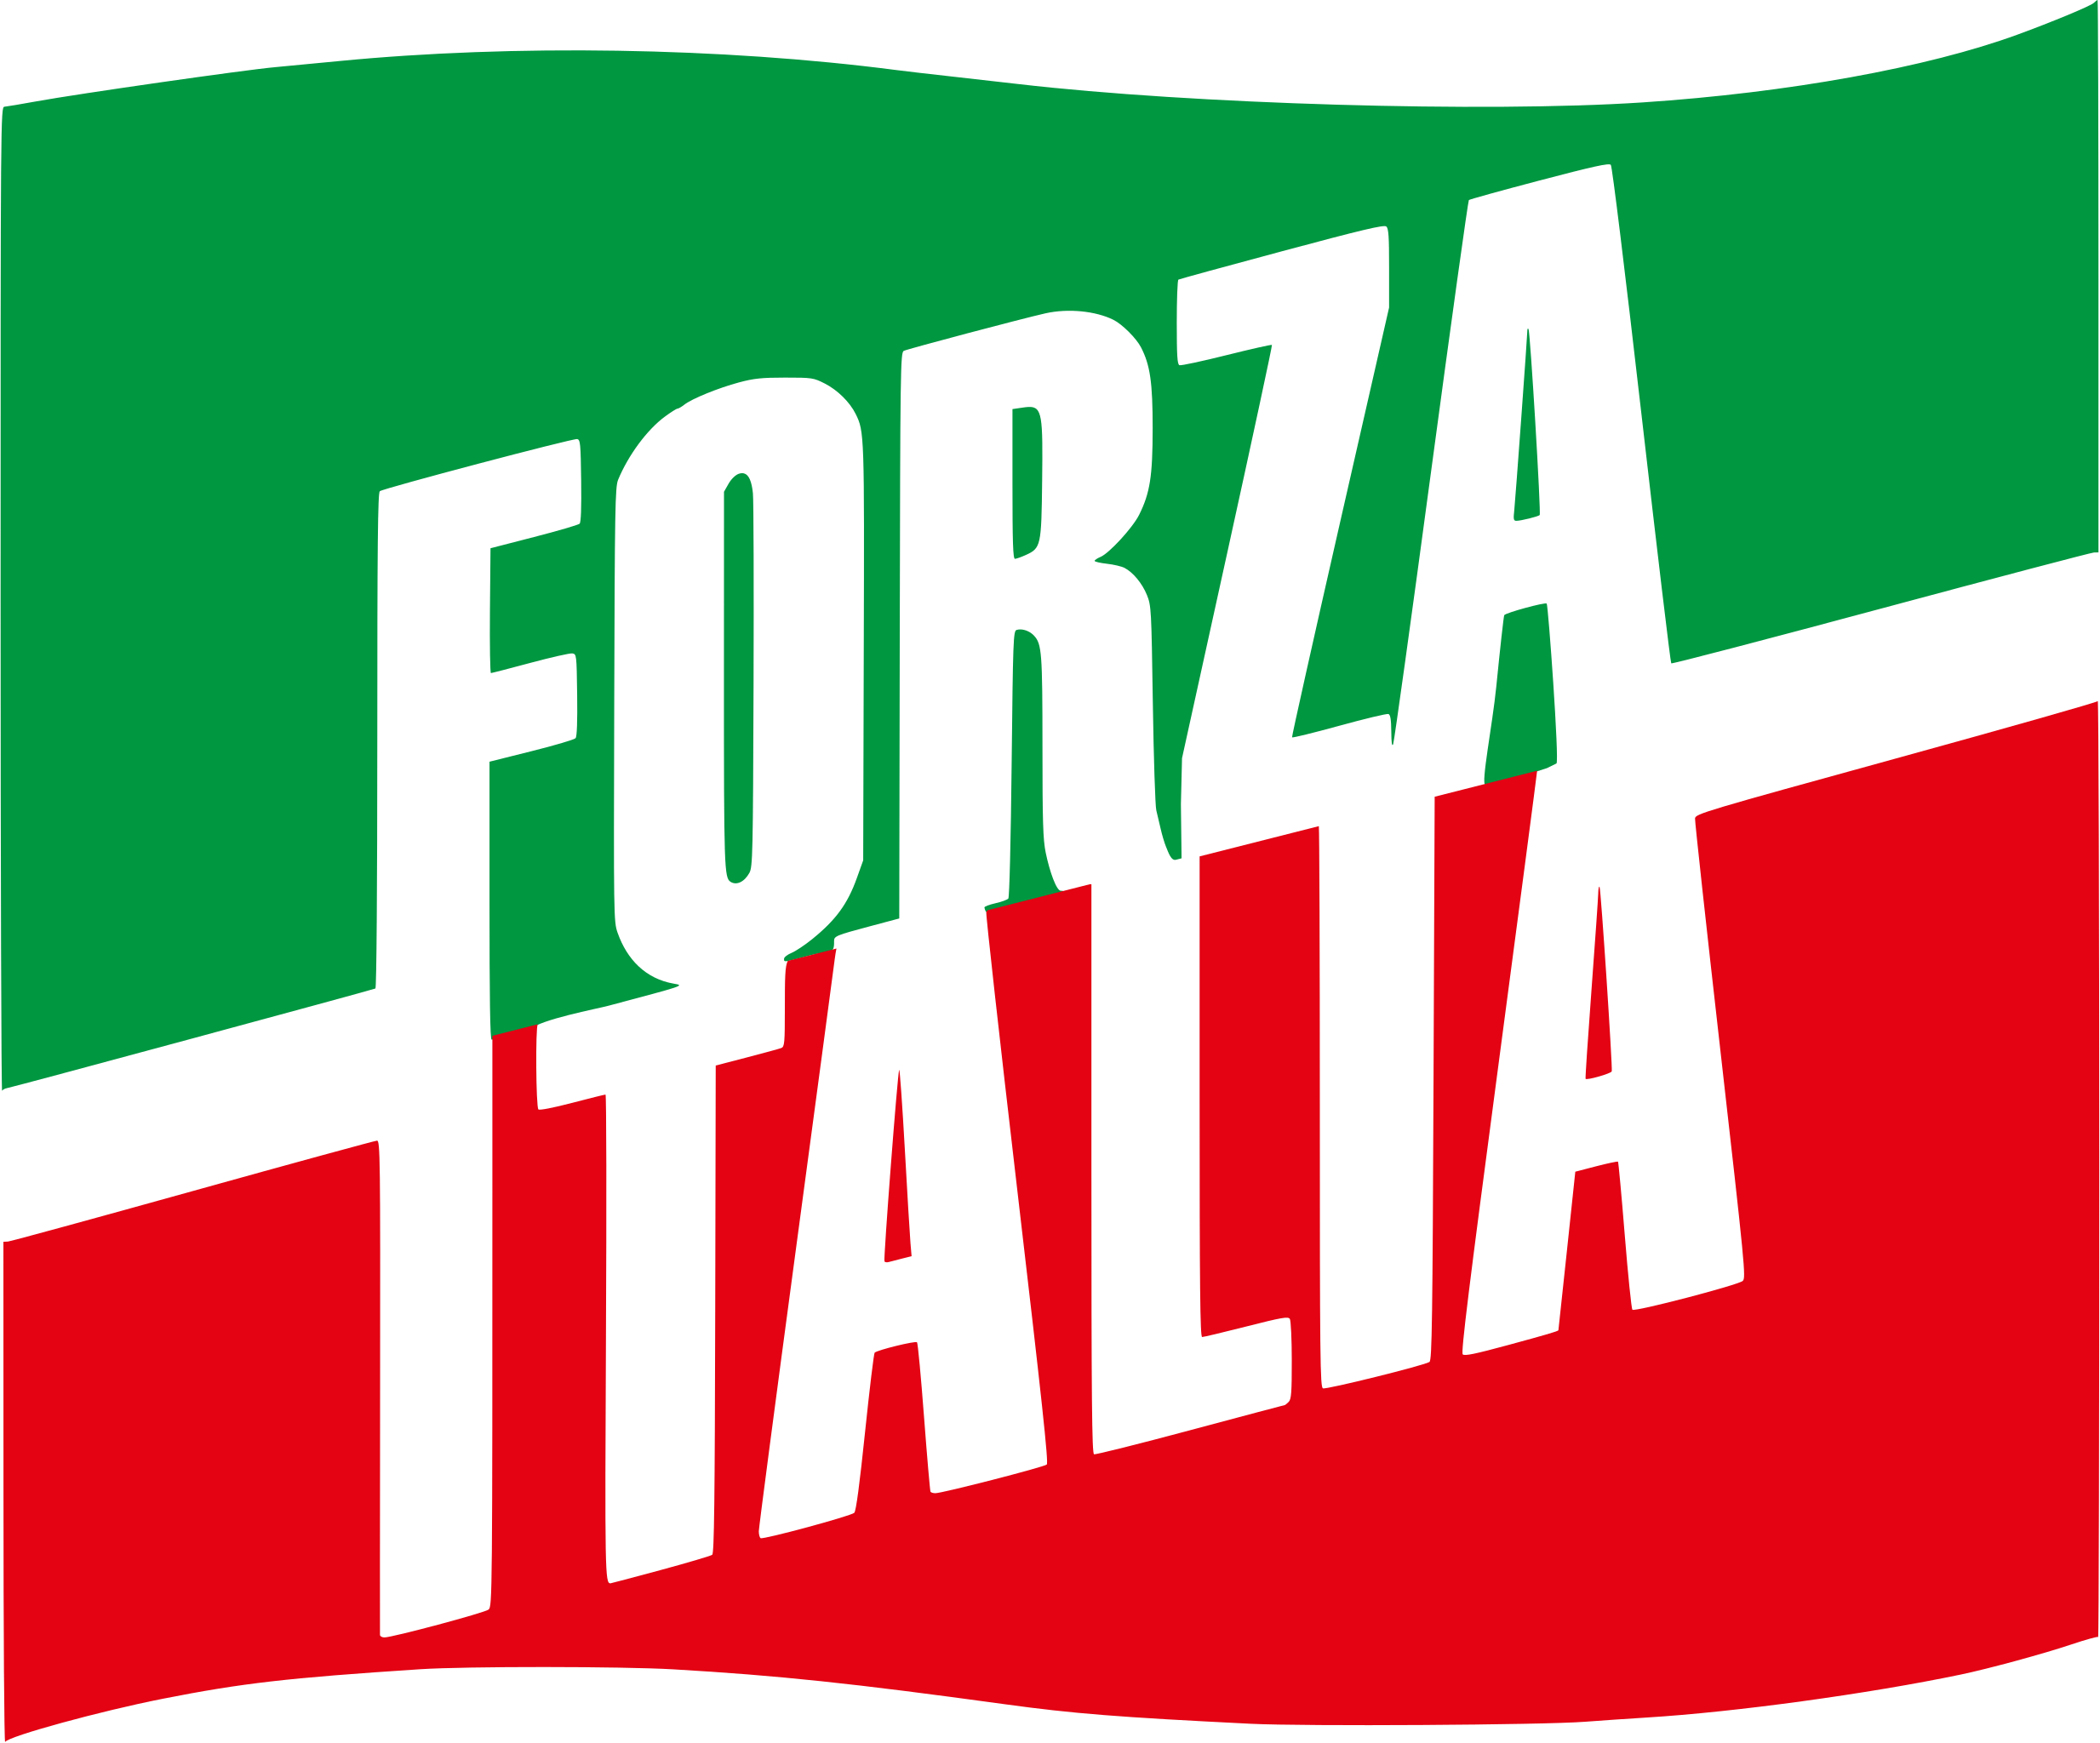 Paolo Ruzzola – Capogruppo Forza Italia Regione Piemonte